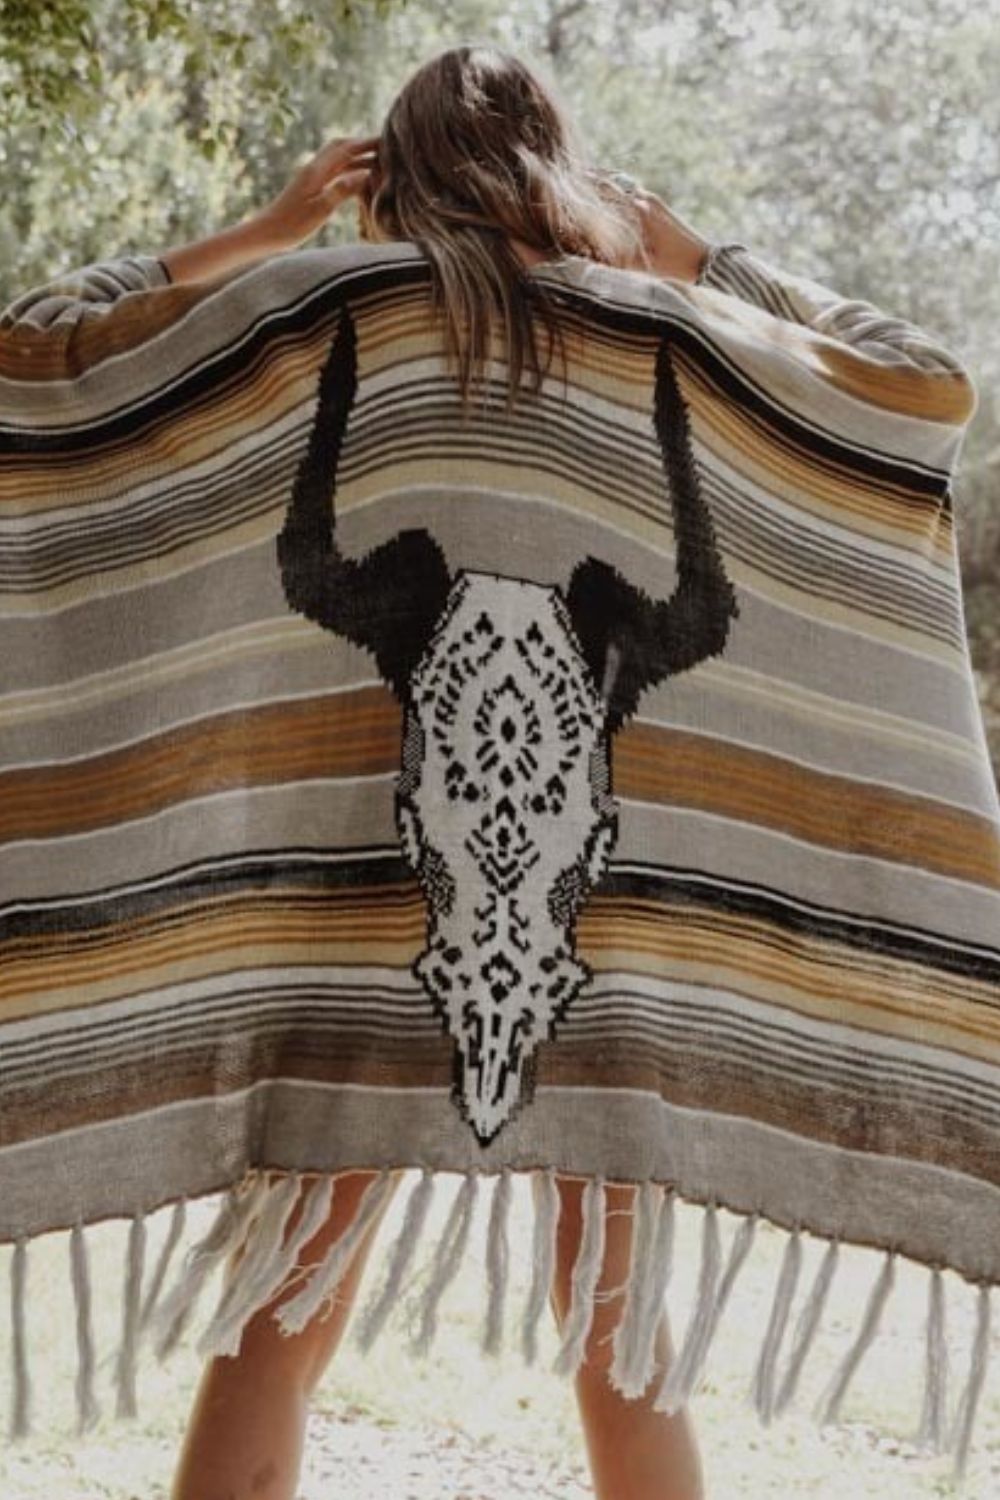 Leto Desert Wanderer Cow Skull Striped Poncho - Guy Christopher